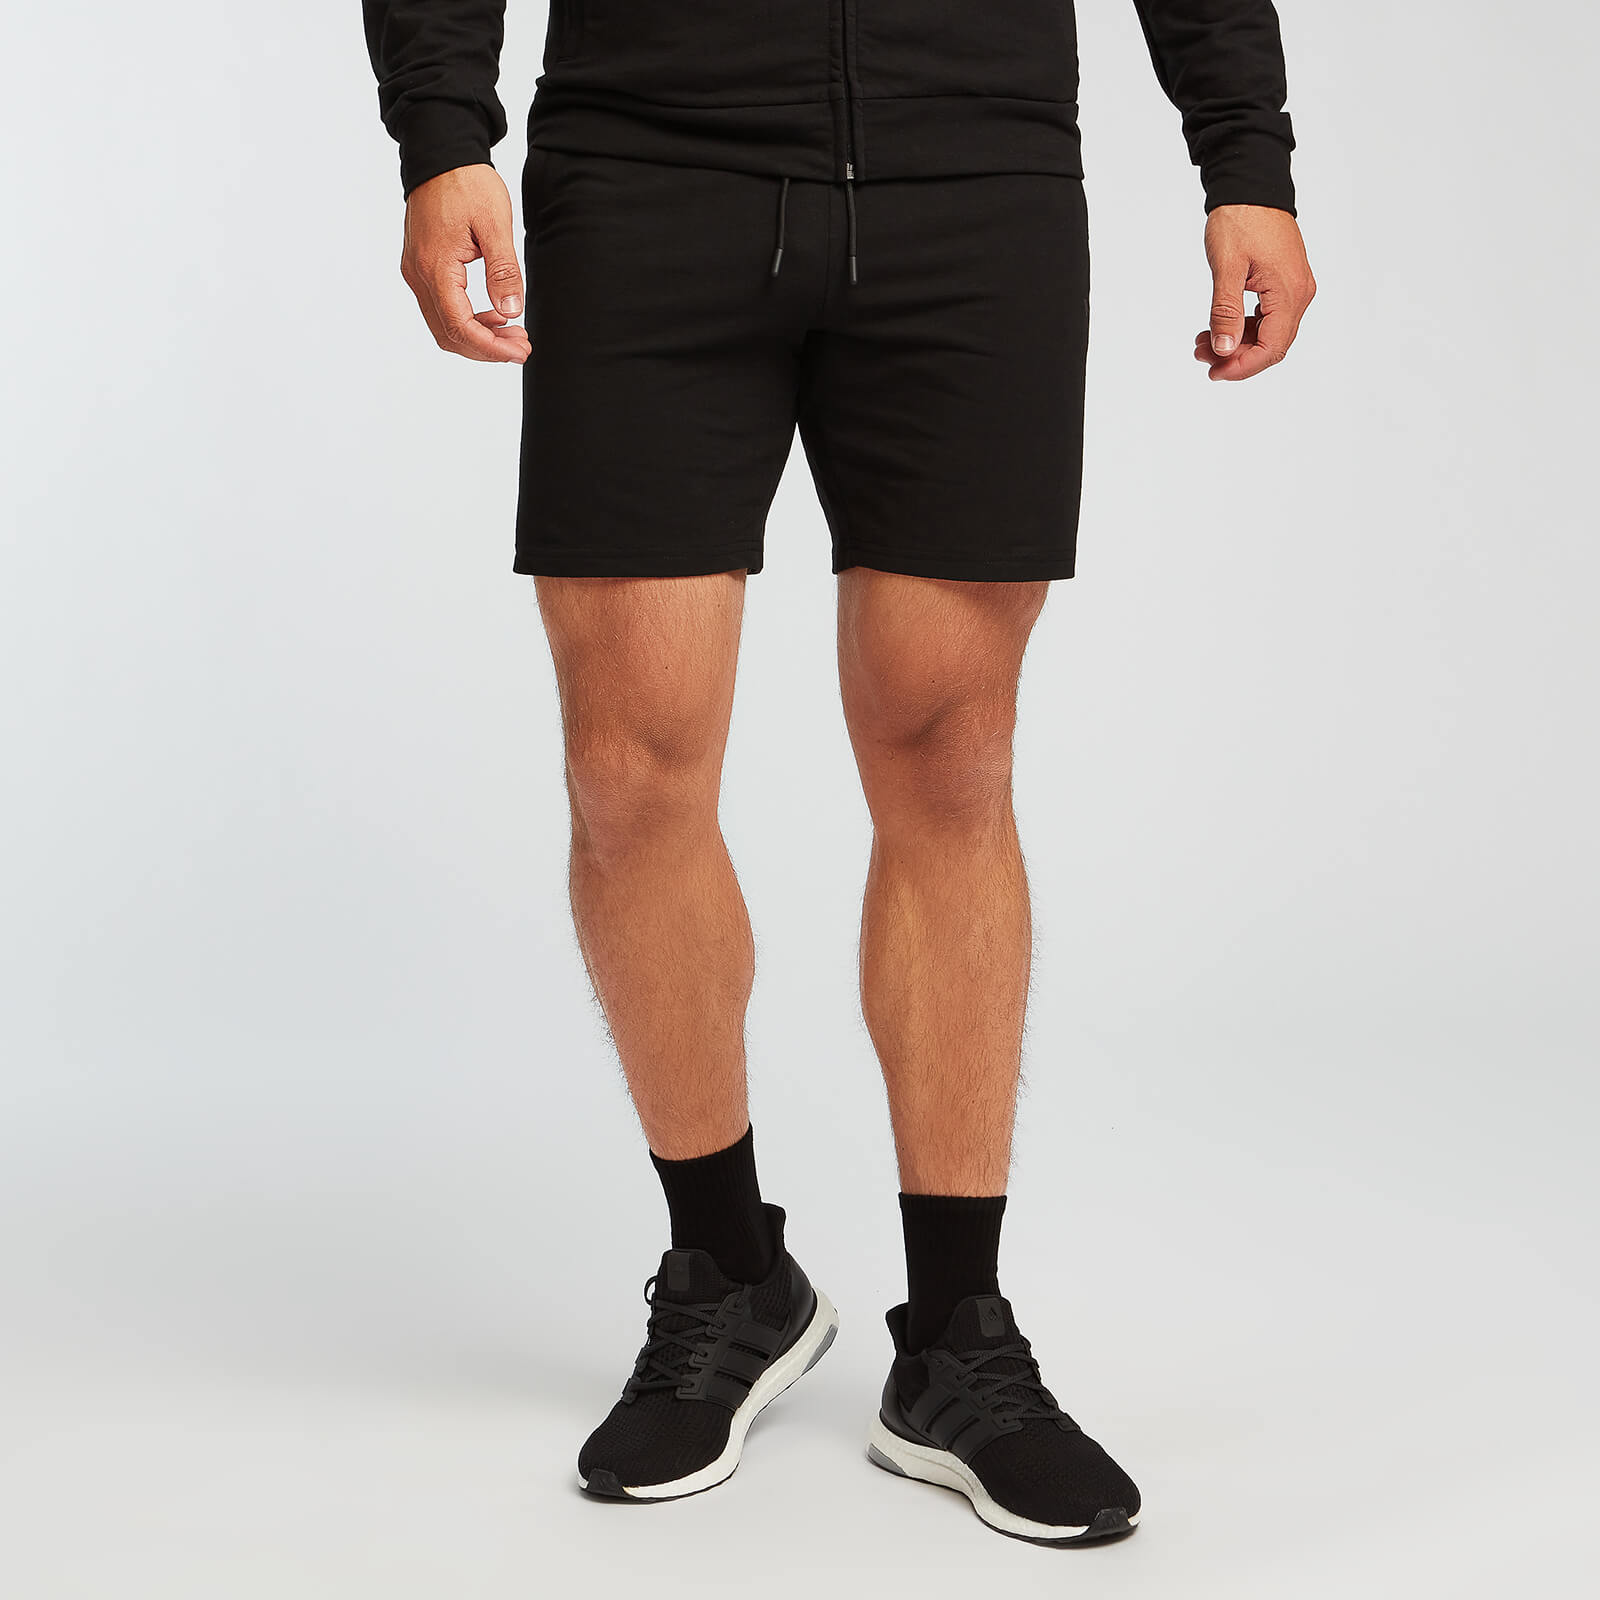 Pantalón de chándal corto Form para hombre de MP - Negro - XS